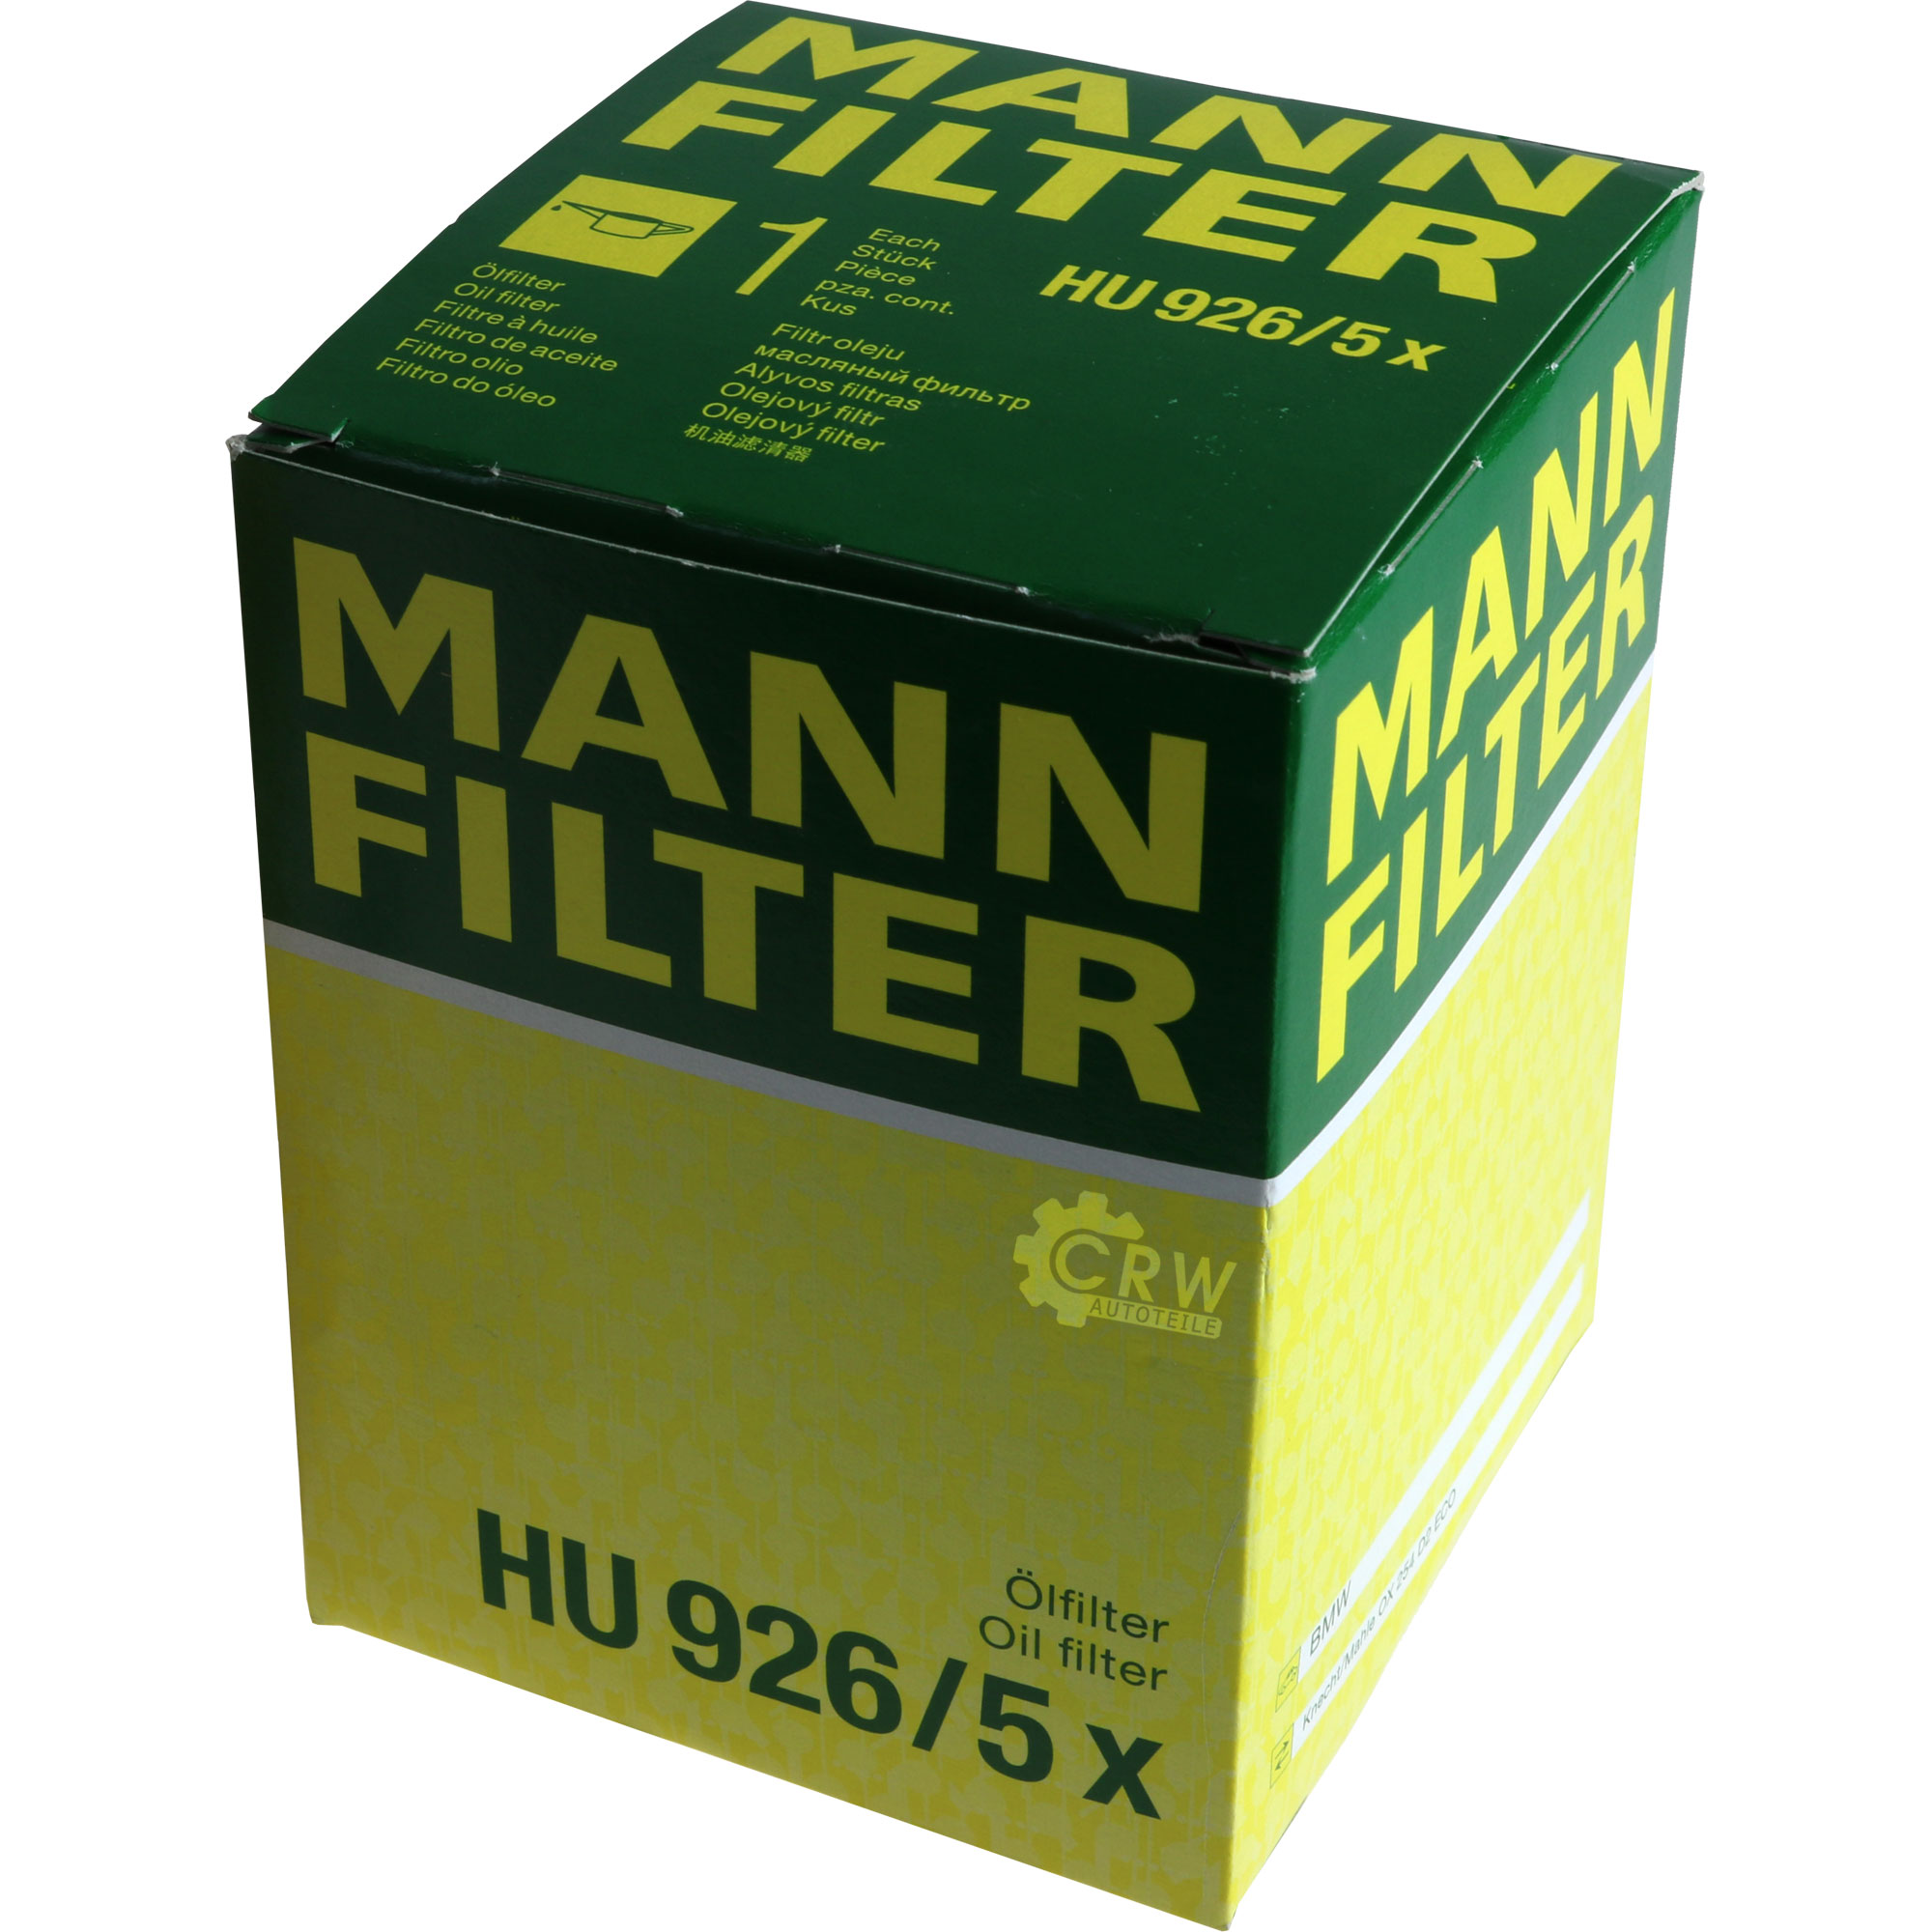 MANN-FILTER Ölfilter HU 926/5 x Oil Filter